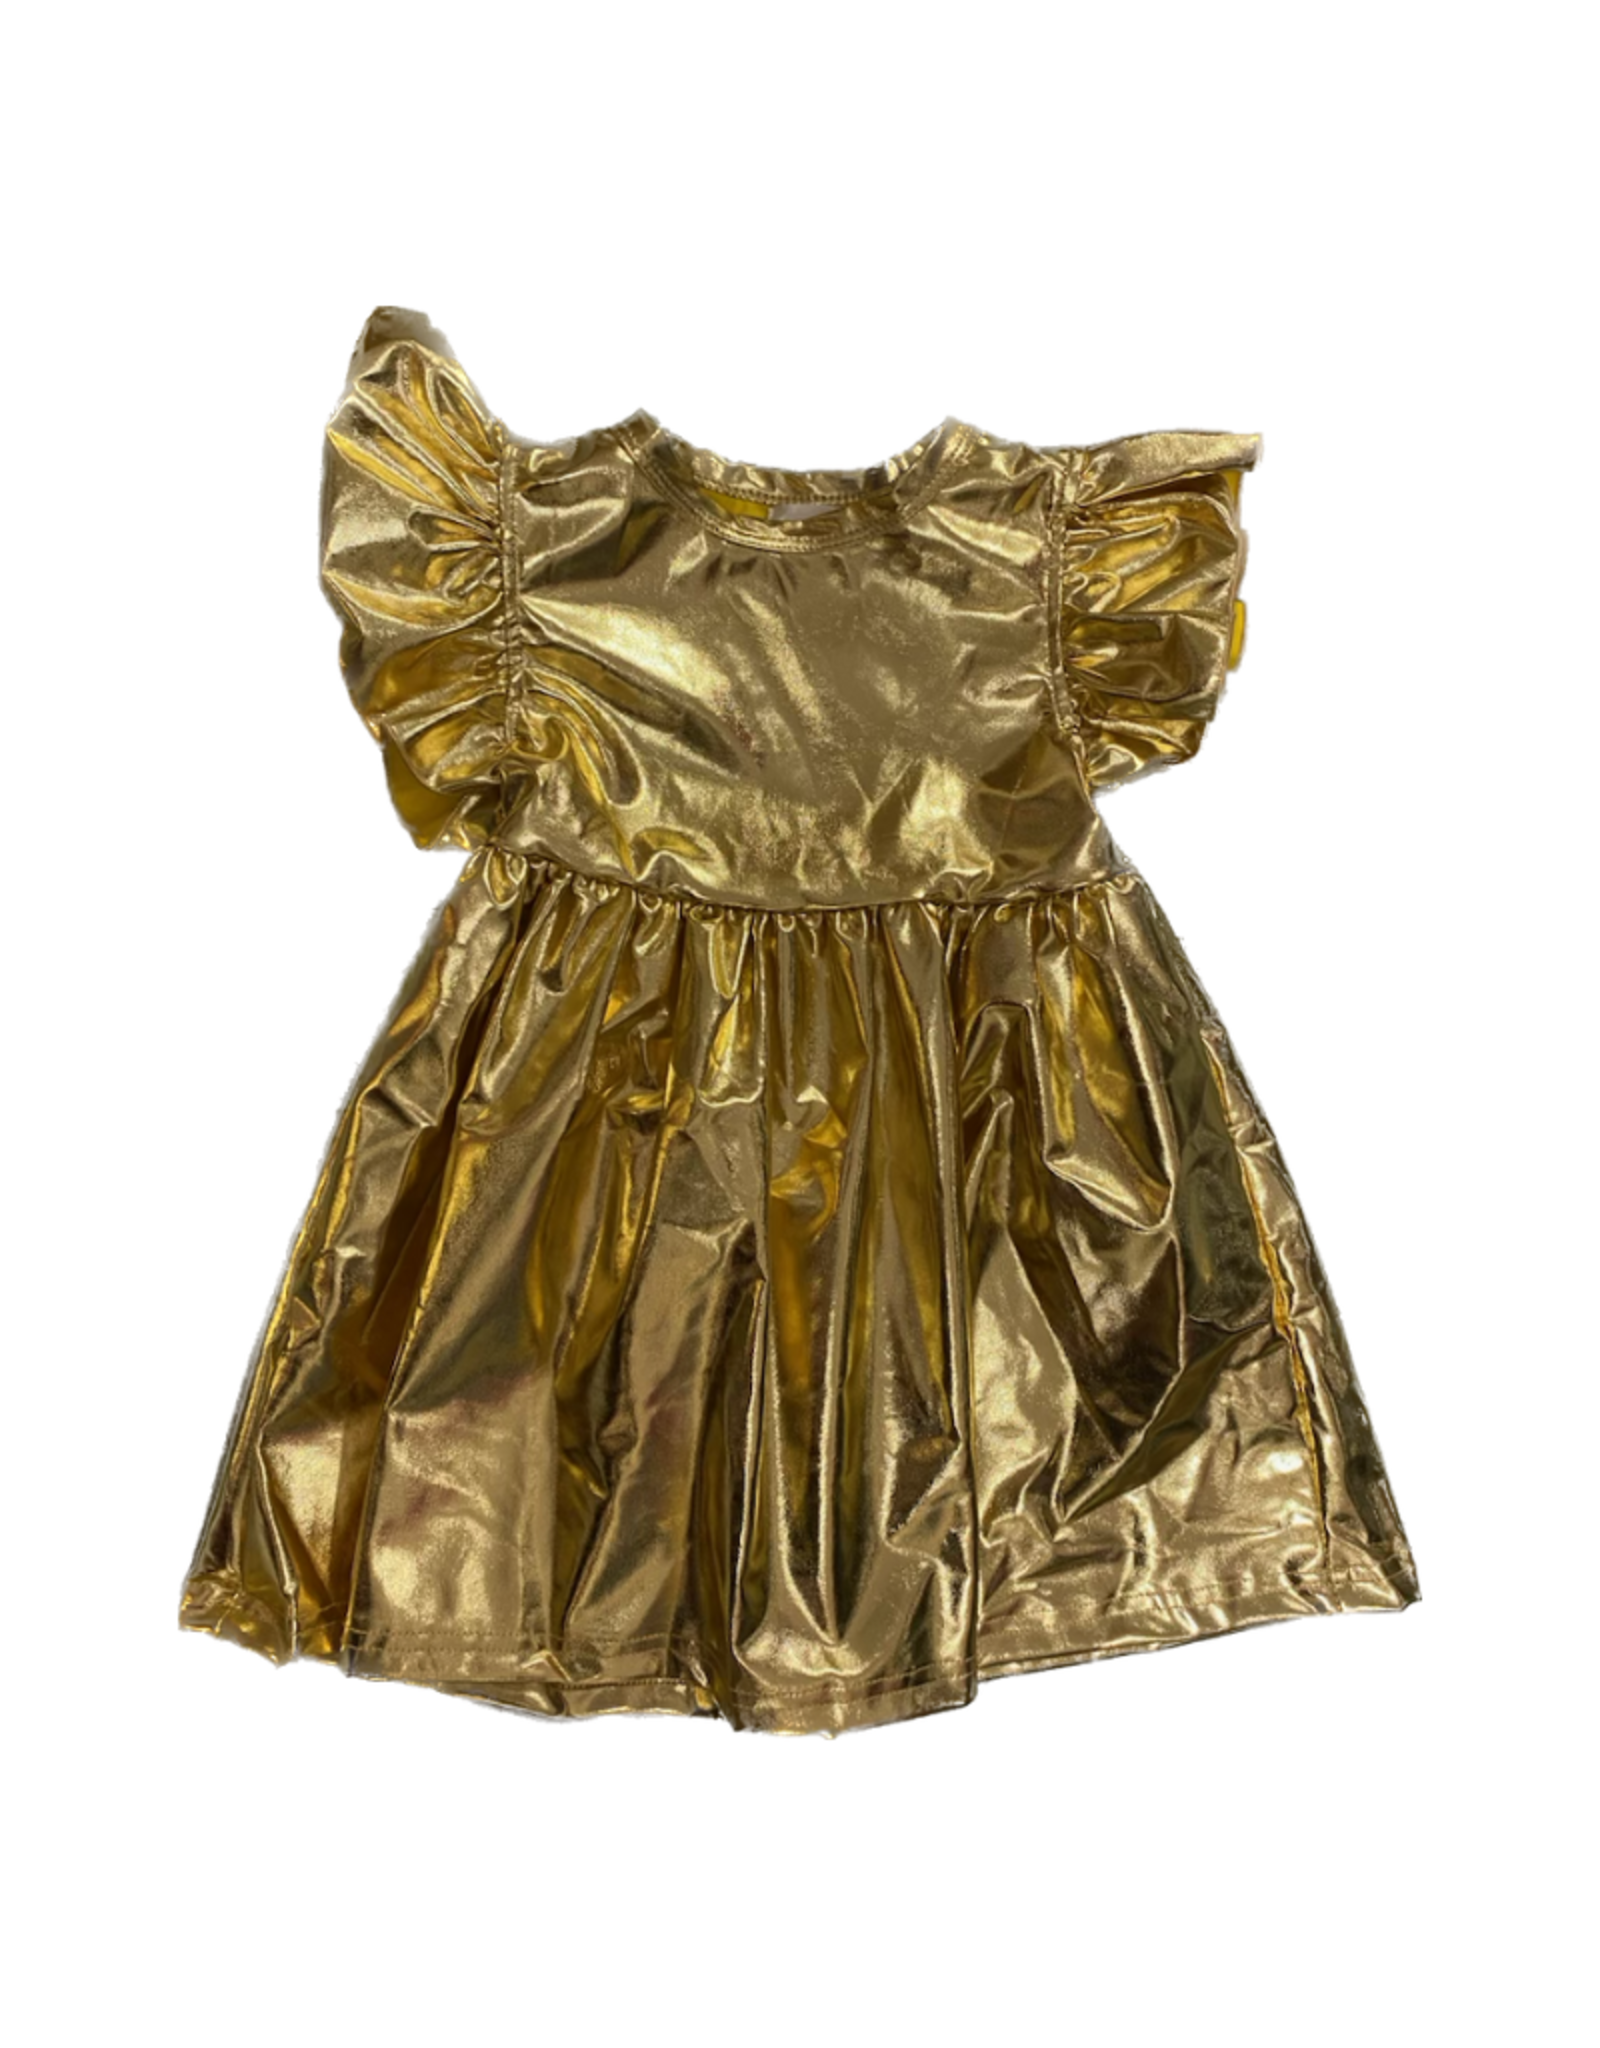 Belle Cher Gold Metallic Dress